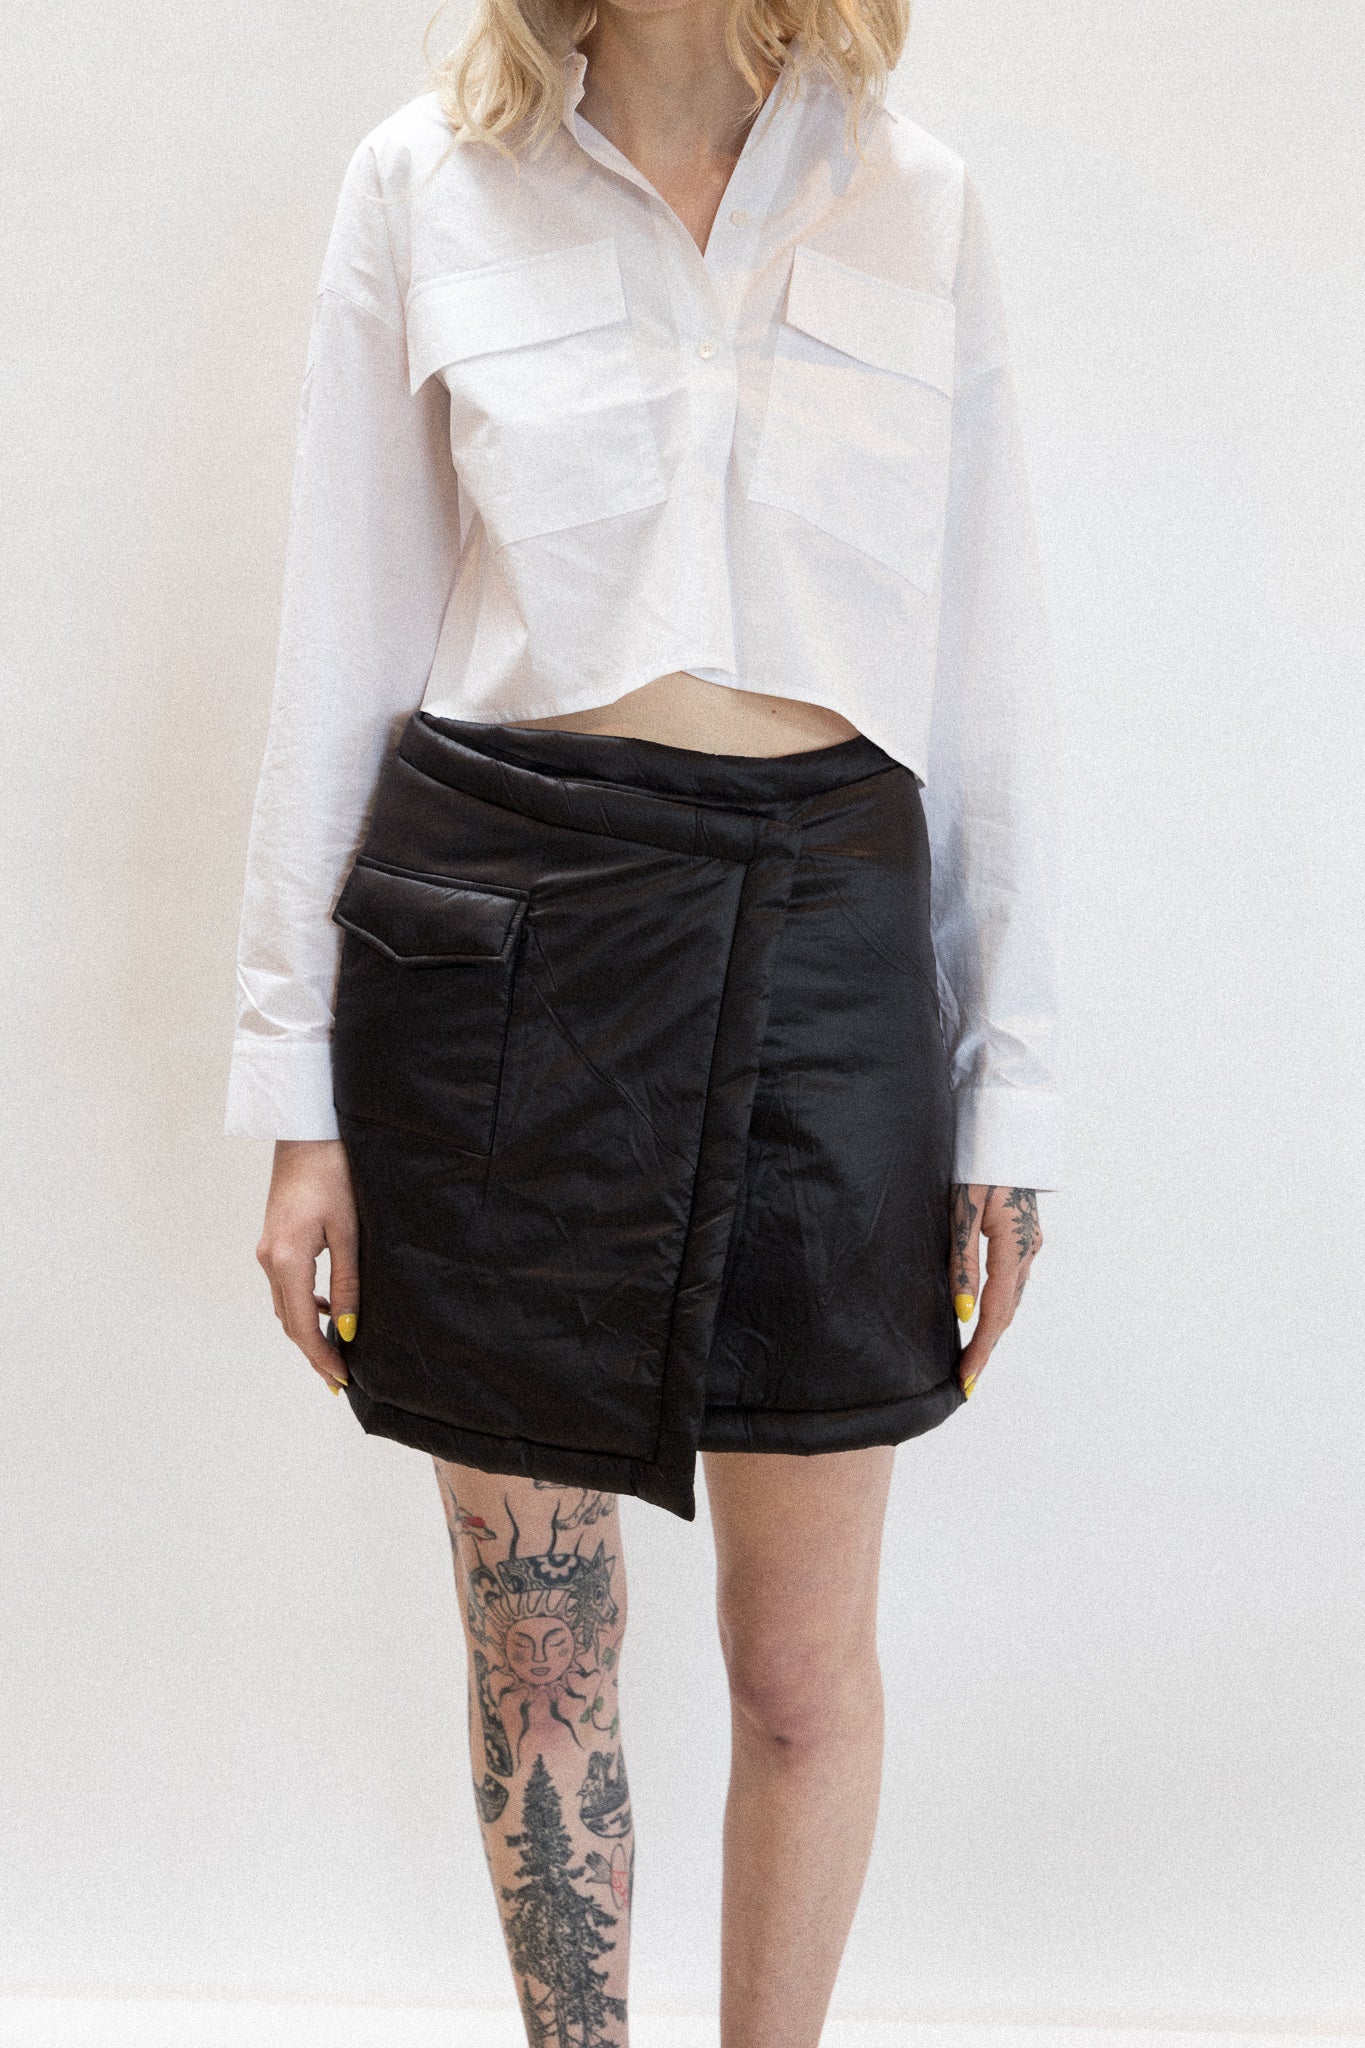 Punk skirt